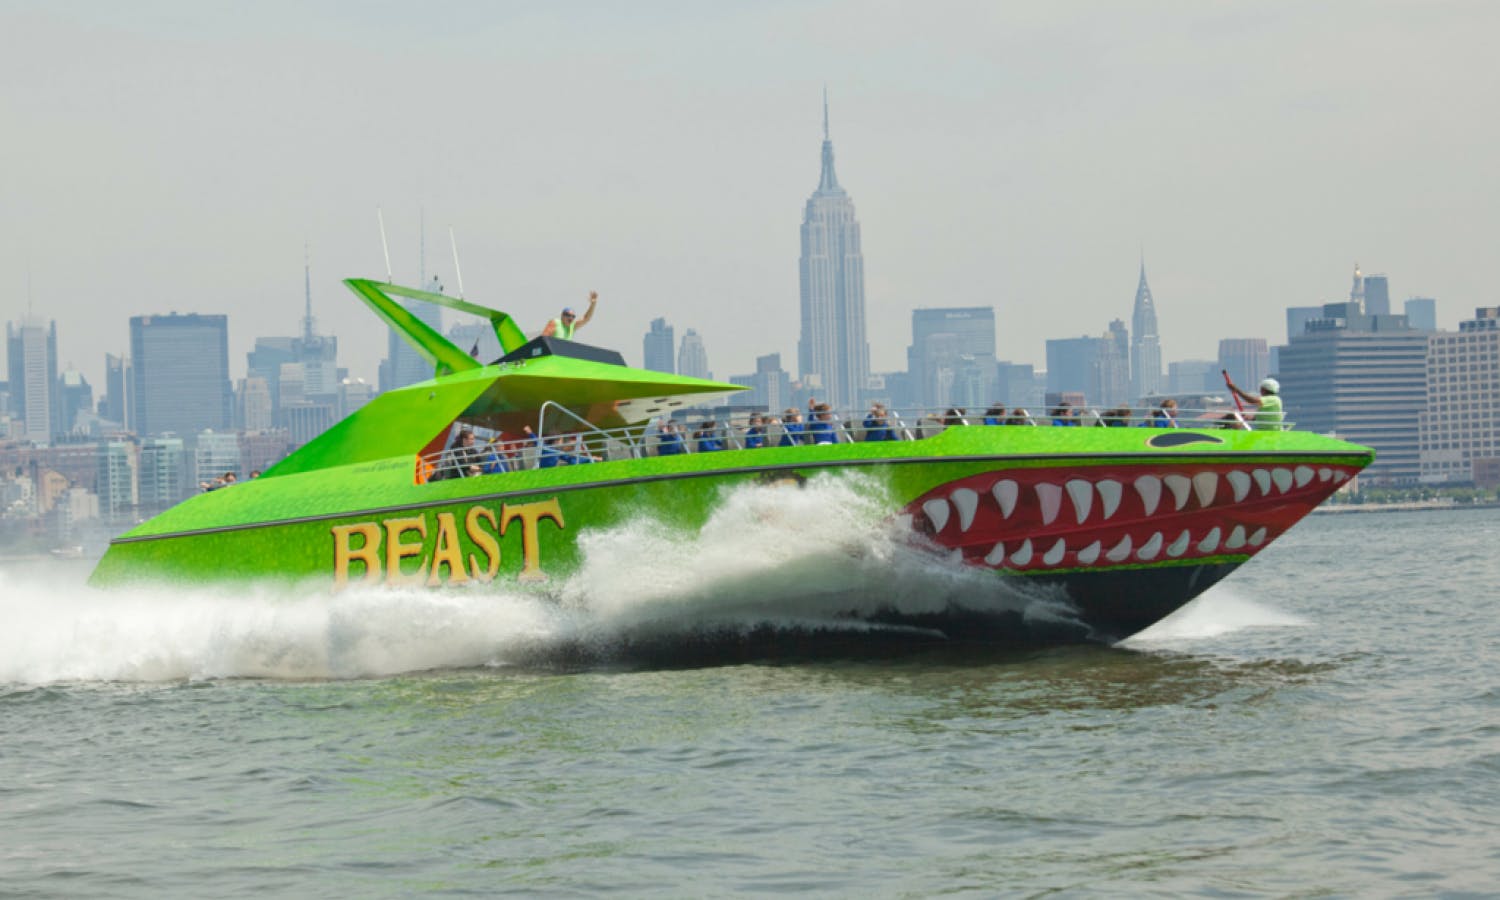 The BEAST speedboat ride in New York Musement